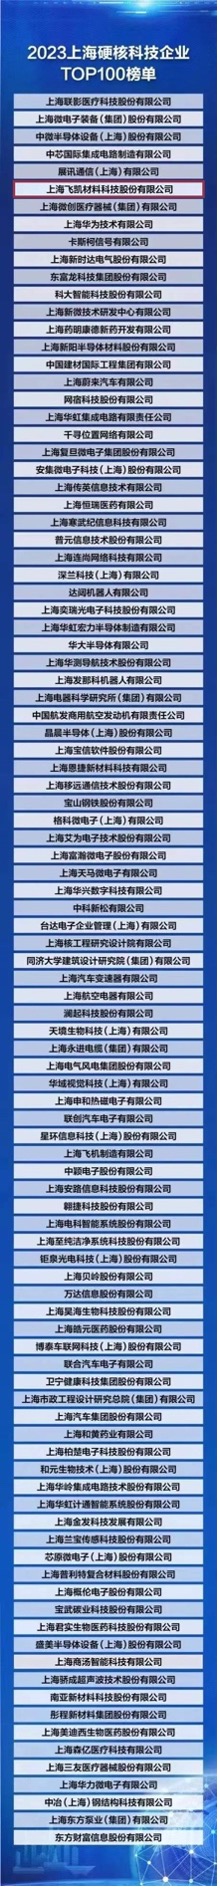 飛凱材料榮登“2023上海硬核科技企業TOP100榜單” ，研發創新賦能產業發展新格局